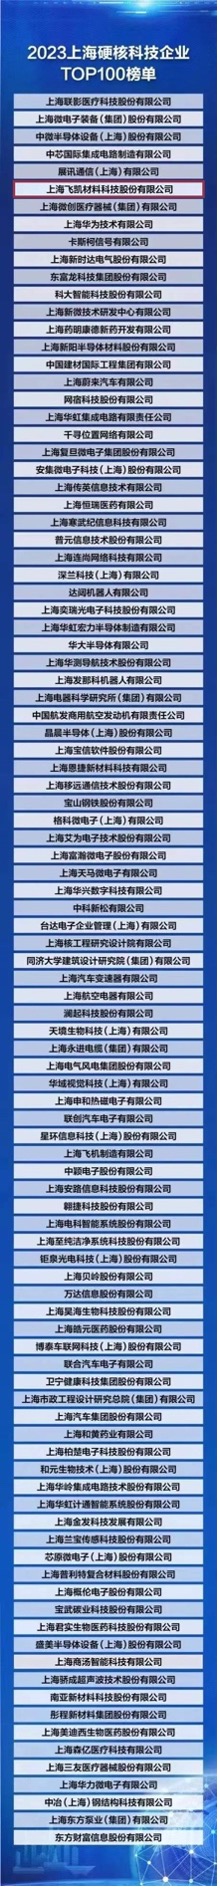 飛凱材料榮登“2023上海硬核科技企業TOP100榜單” ，研發創新賦能產業發展新格局